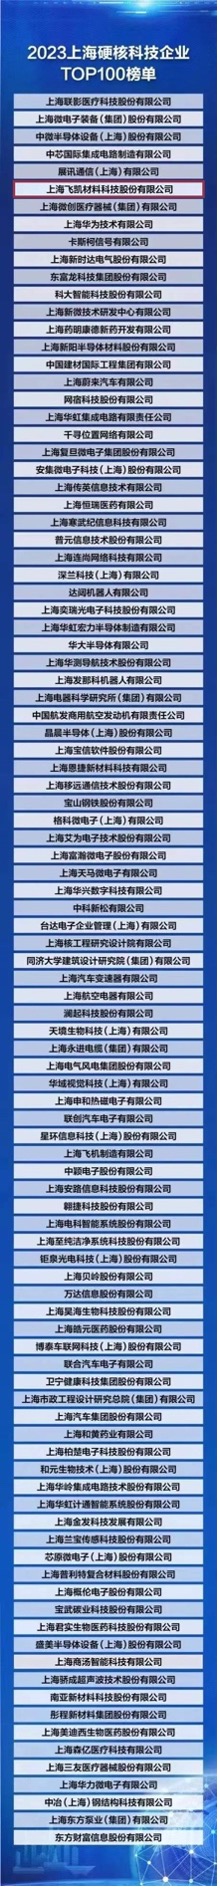 飛凱材料榮登“2023上海硬核科技企業TOP100榜單” ，研發創新賦能產業發展新格局